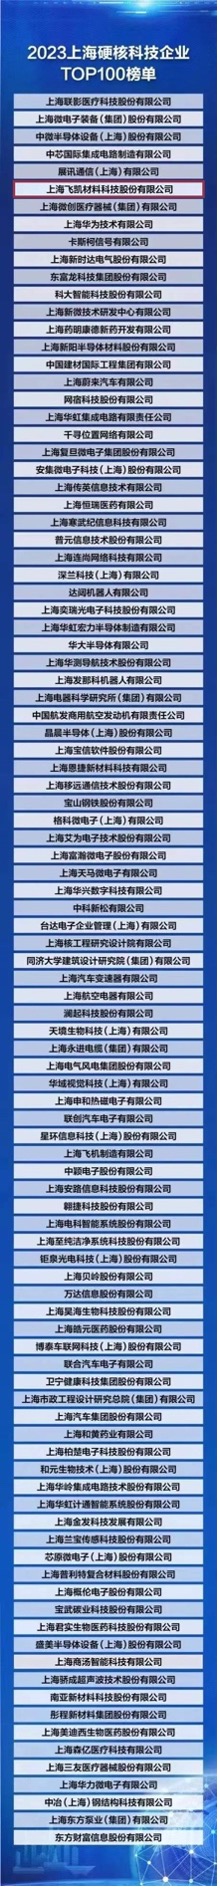 飛凱材料榮登“2023上海硬核科技企業TOP100榜單” ，研發創新賦能產業發展新格局